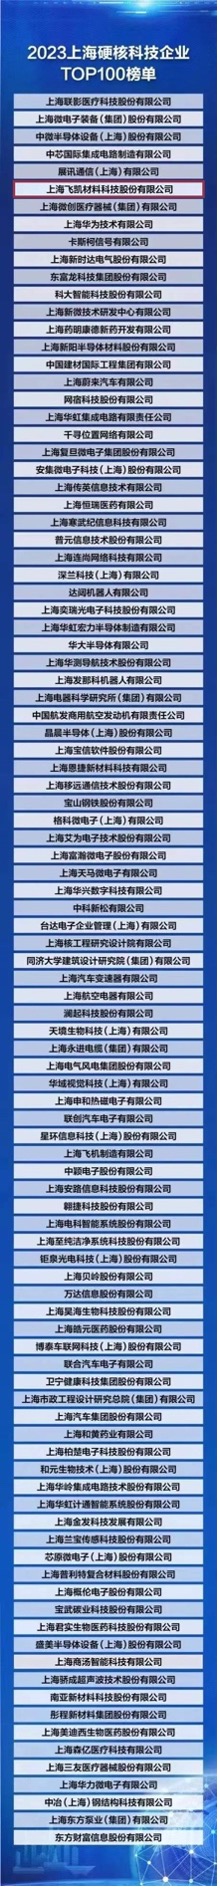 飛凱材料榮登“2023上海硬核科技企業TOP100榜單” ，研發創新賦能產業發展新格局